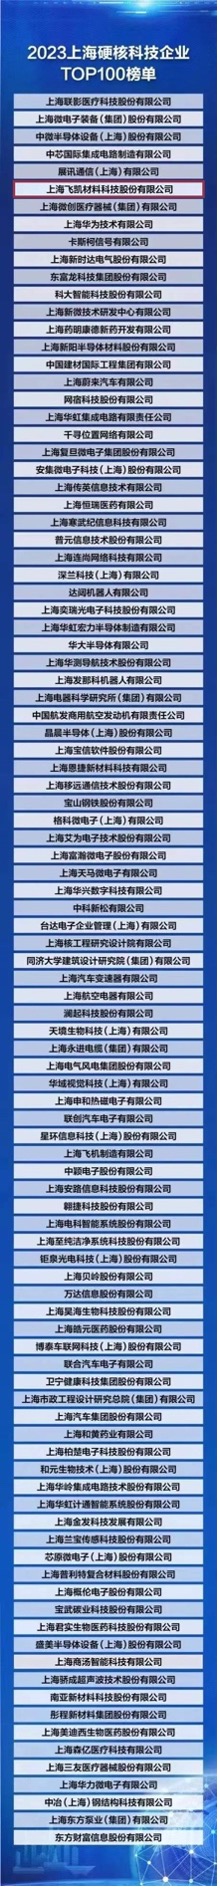 飛凱材料榮登“2023上海硬核科技企業TOP100榜單” ，研發創新賦能產業發展新格局